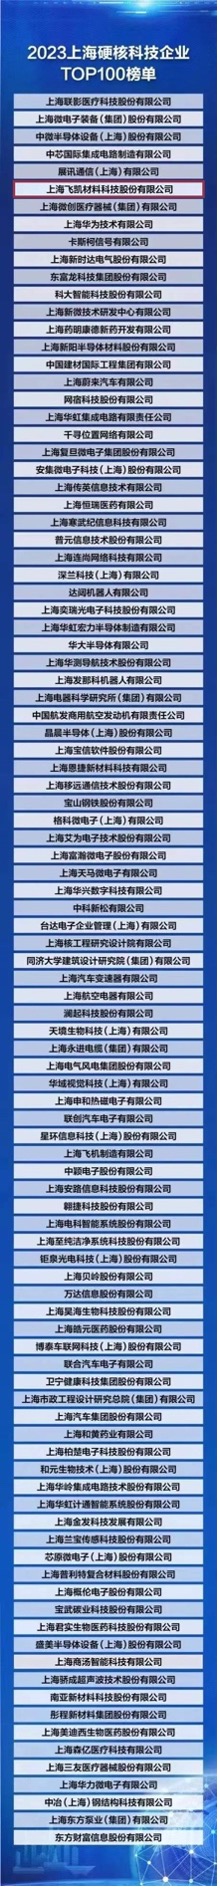 飛凱材料榮登“2023上海硬核科技企業TOP100榜單” ，研發創新賦能產業發展新格局